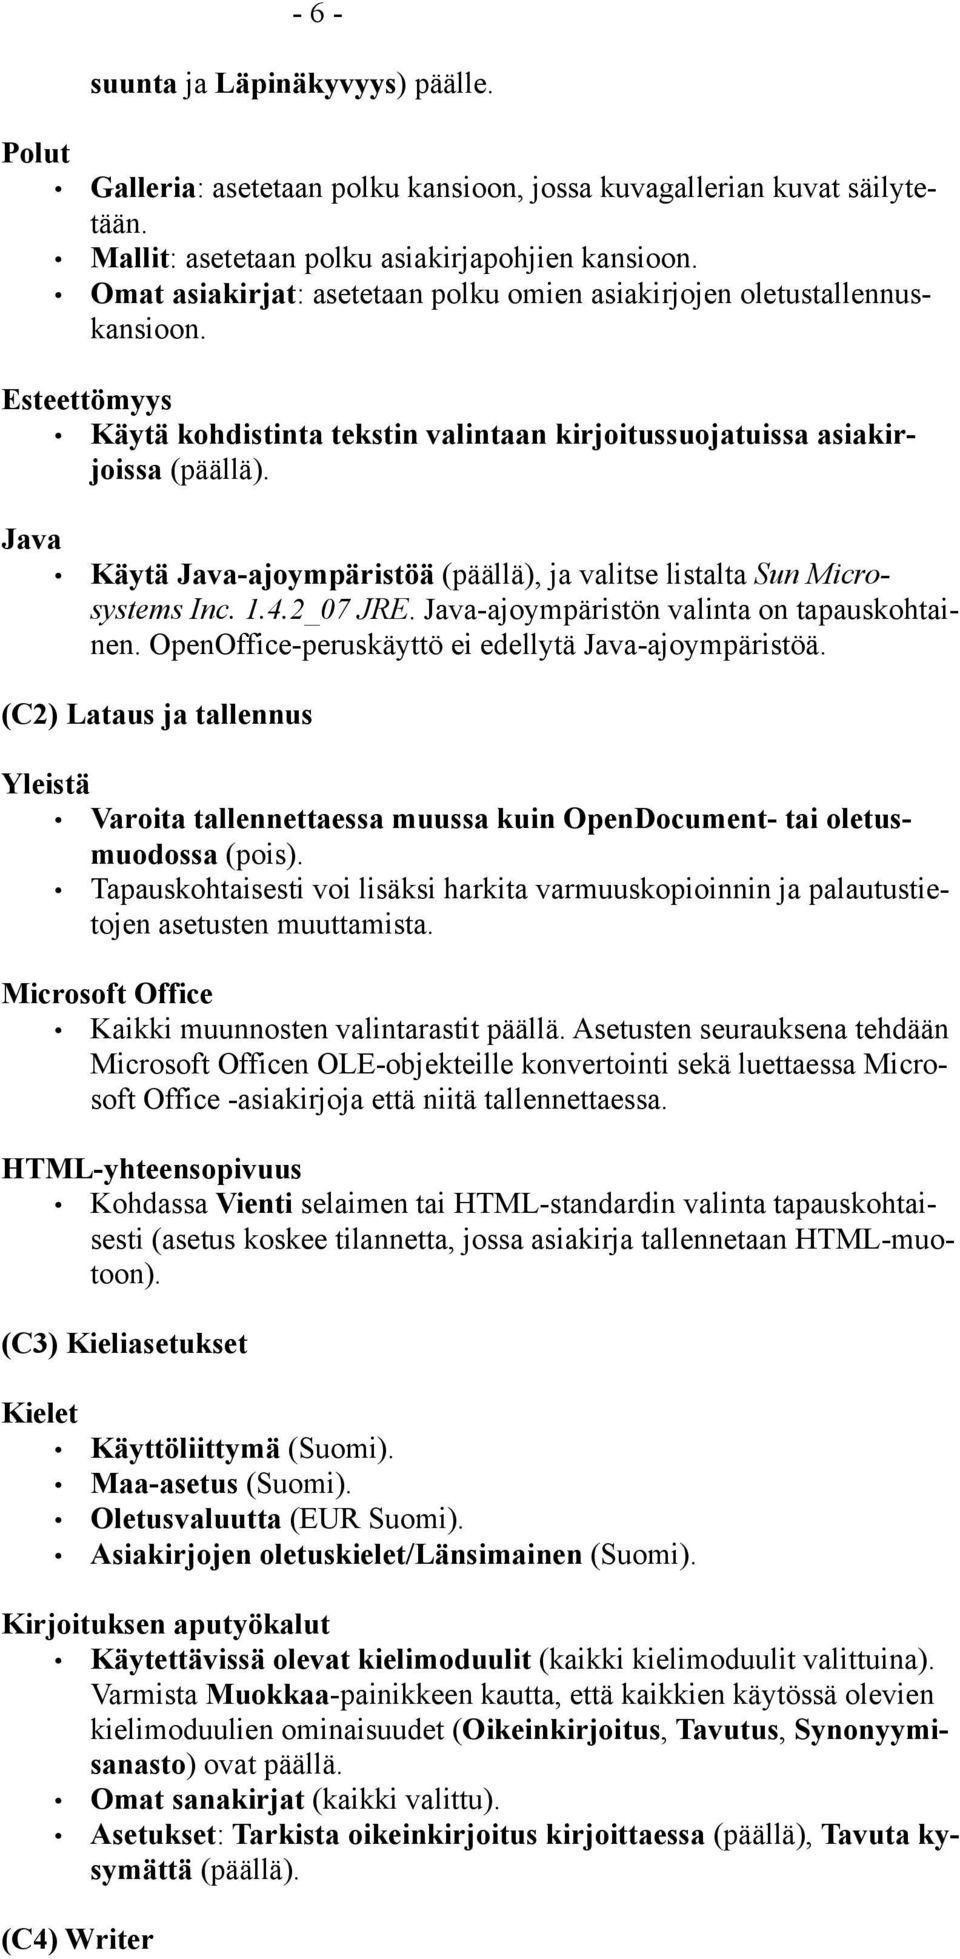 Java Käytä Java-ajoympäristöä (päällä), ja valitse listalta Sun Microsystems Inc. 1.4.2_07 JRE. Java-ajoympäristön valinta on tapauskohtainen. OpenOffice-peruskäyttö ei edellytä Java-ajoympäristöä.